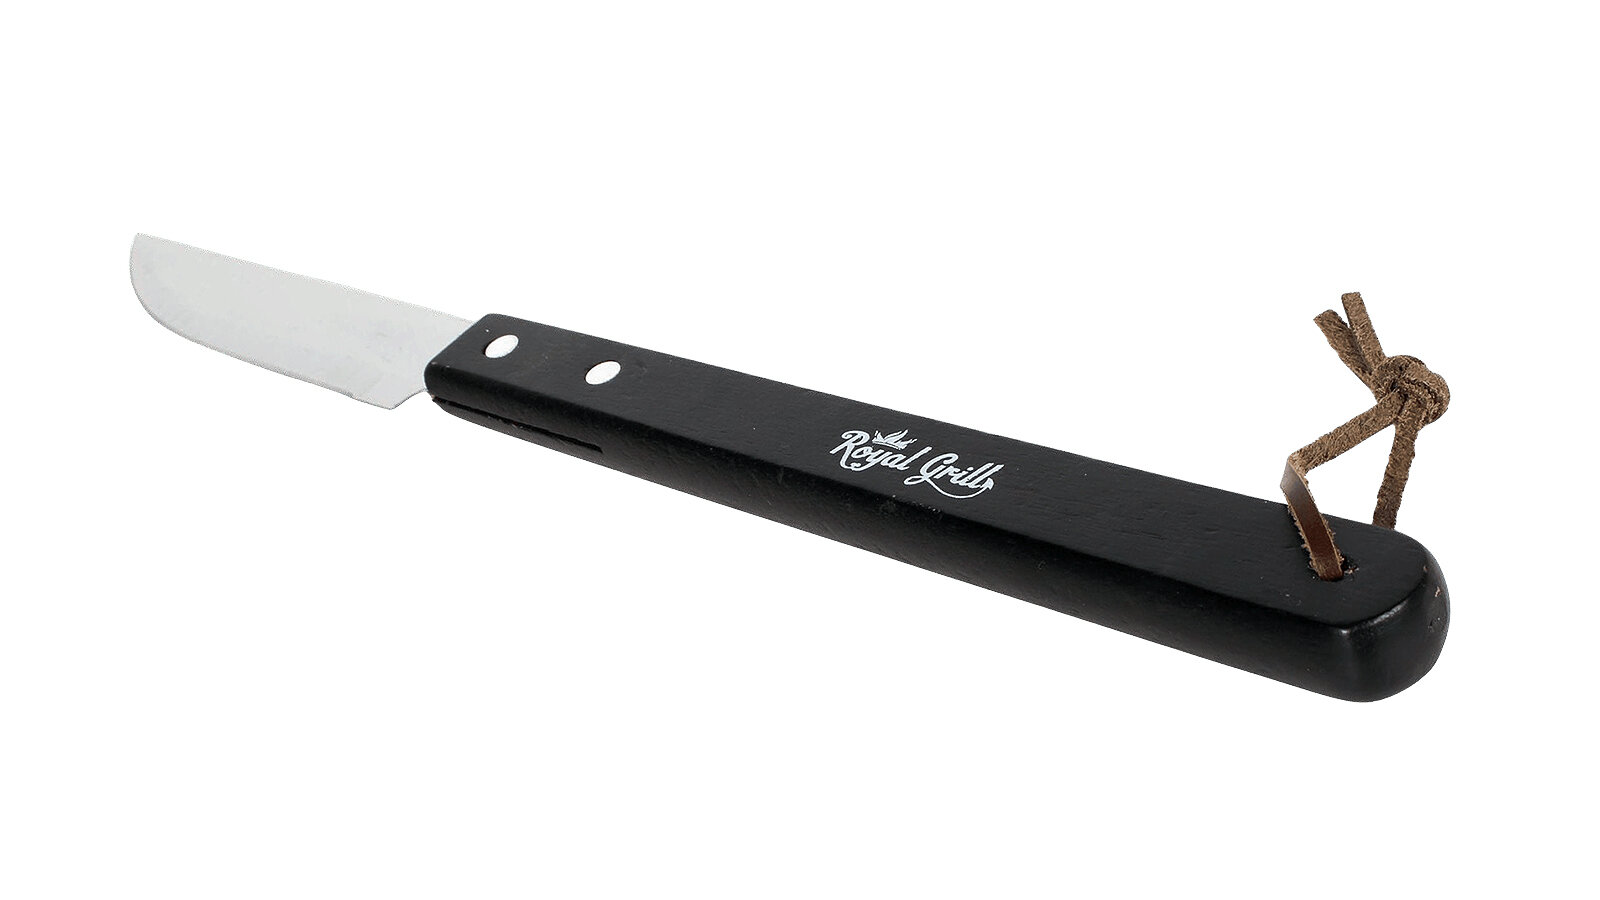 Нож для гриля ROYALGRILL 80-006